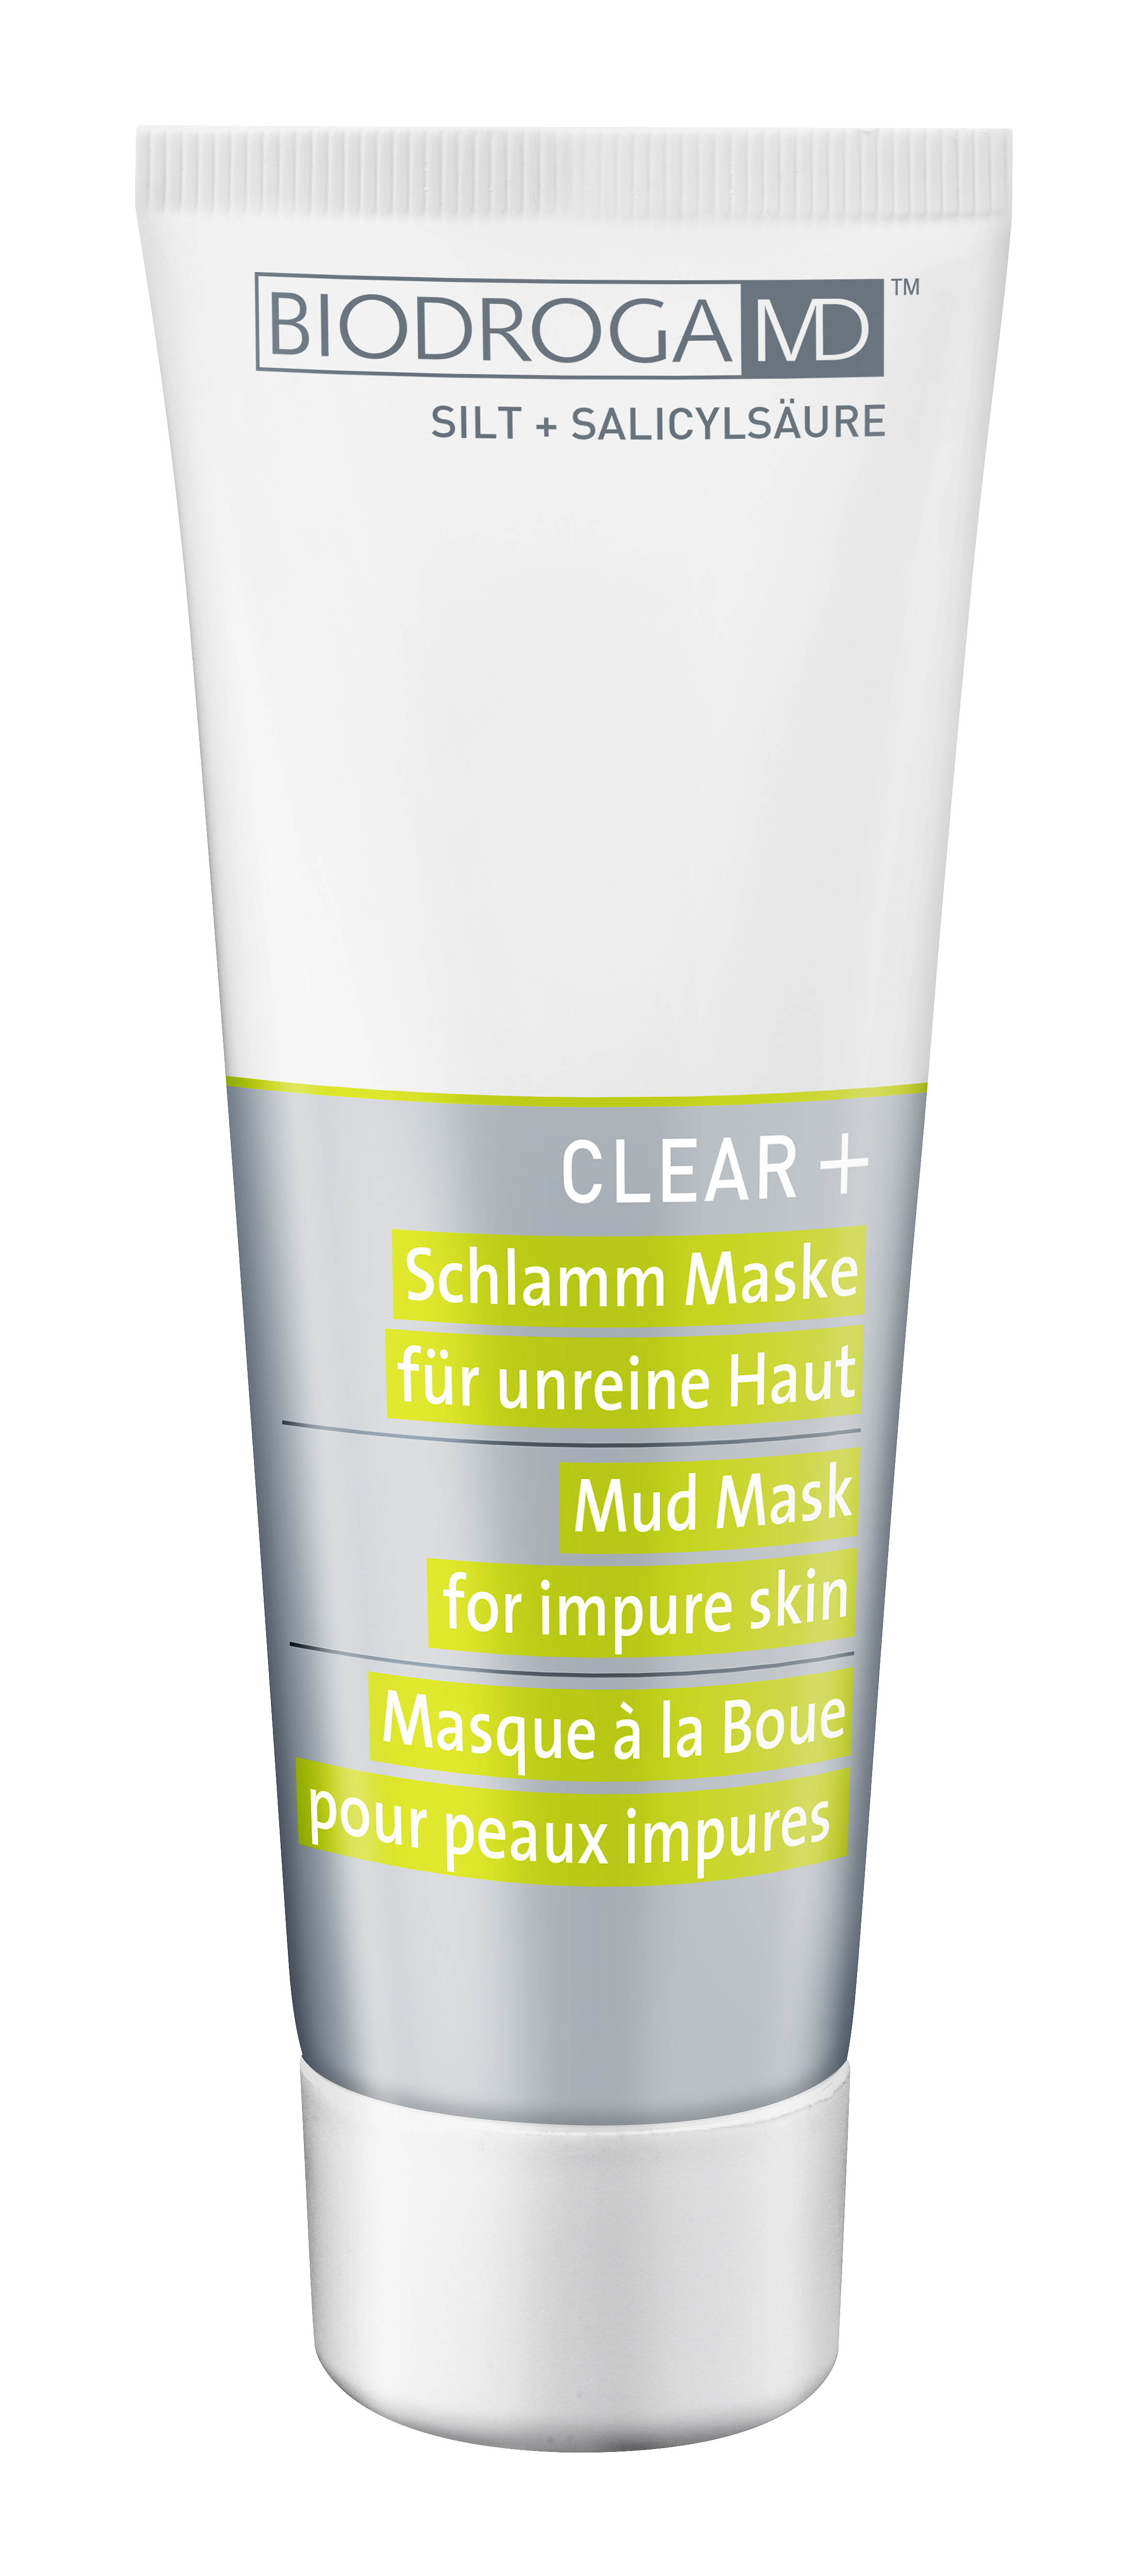 Biodroga MD Clear+ Mud Mask For Impure Skin 75ml